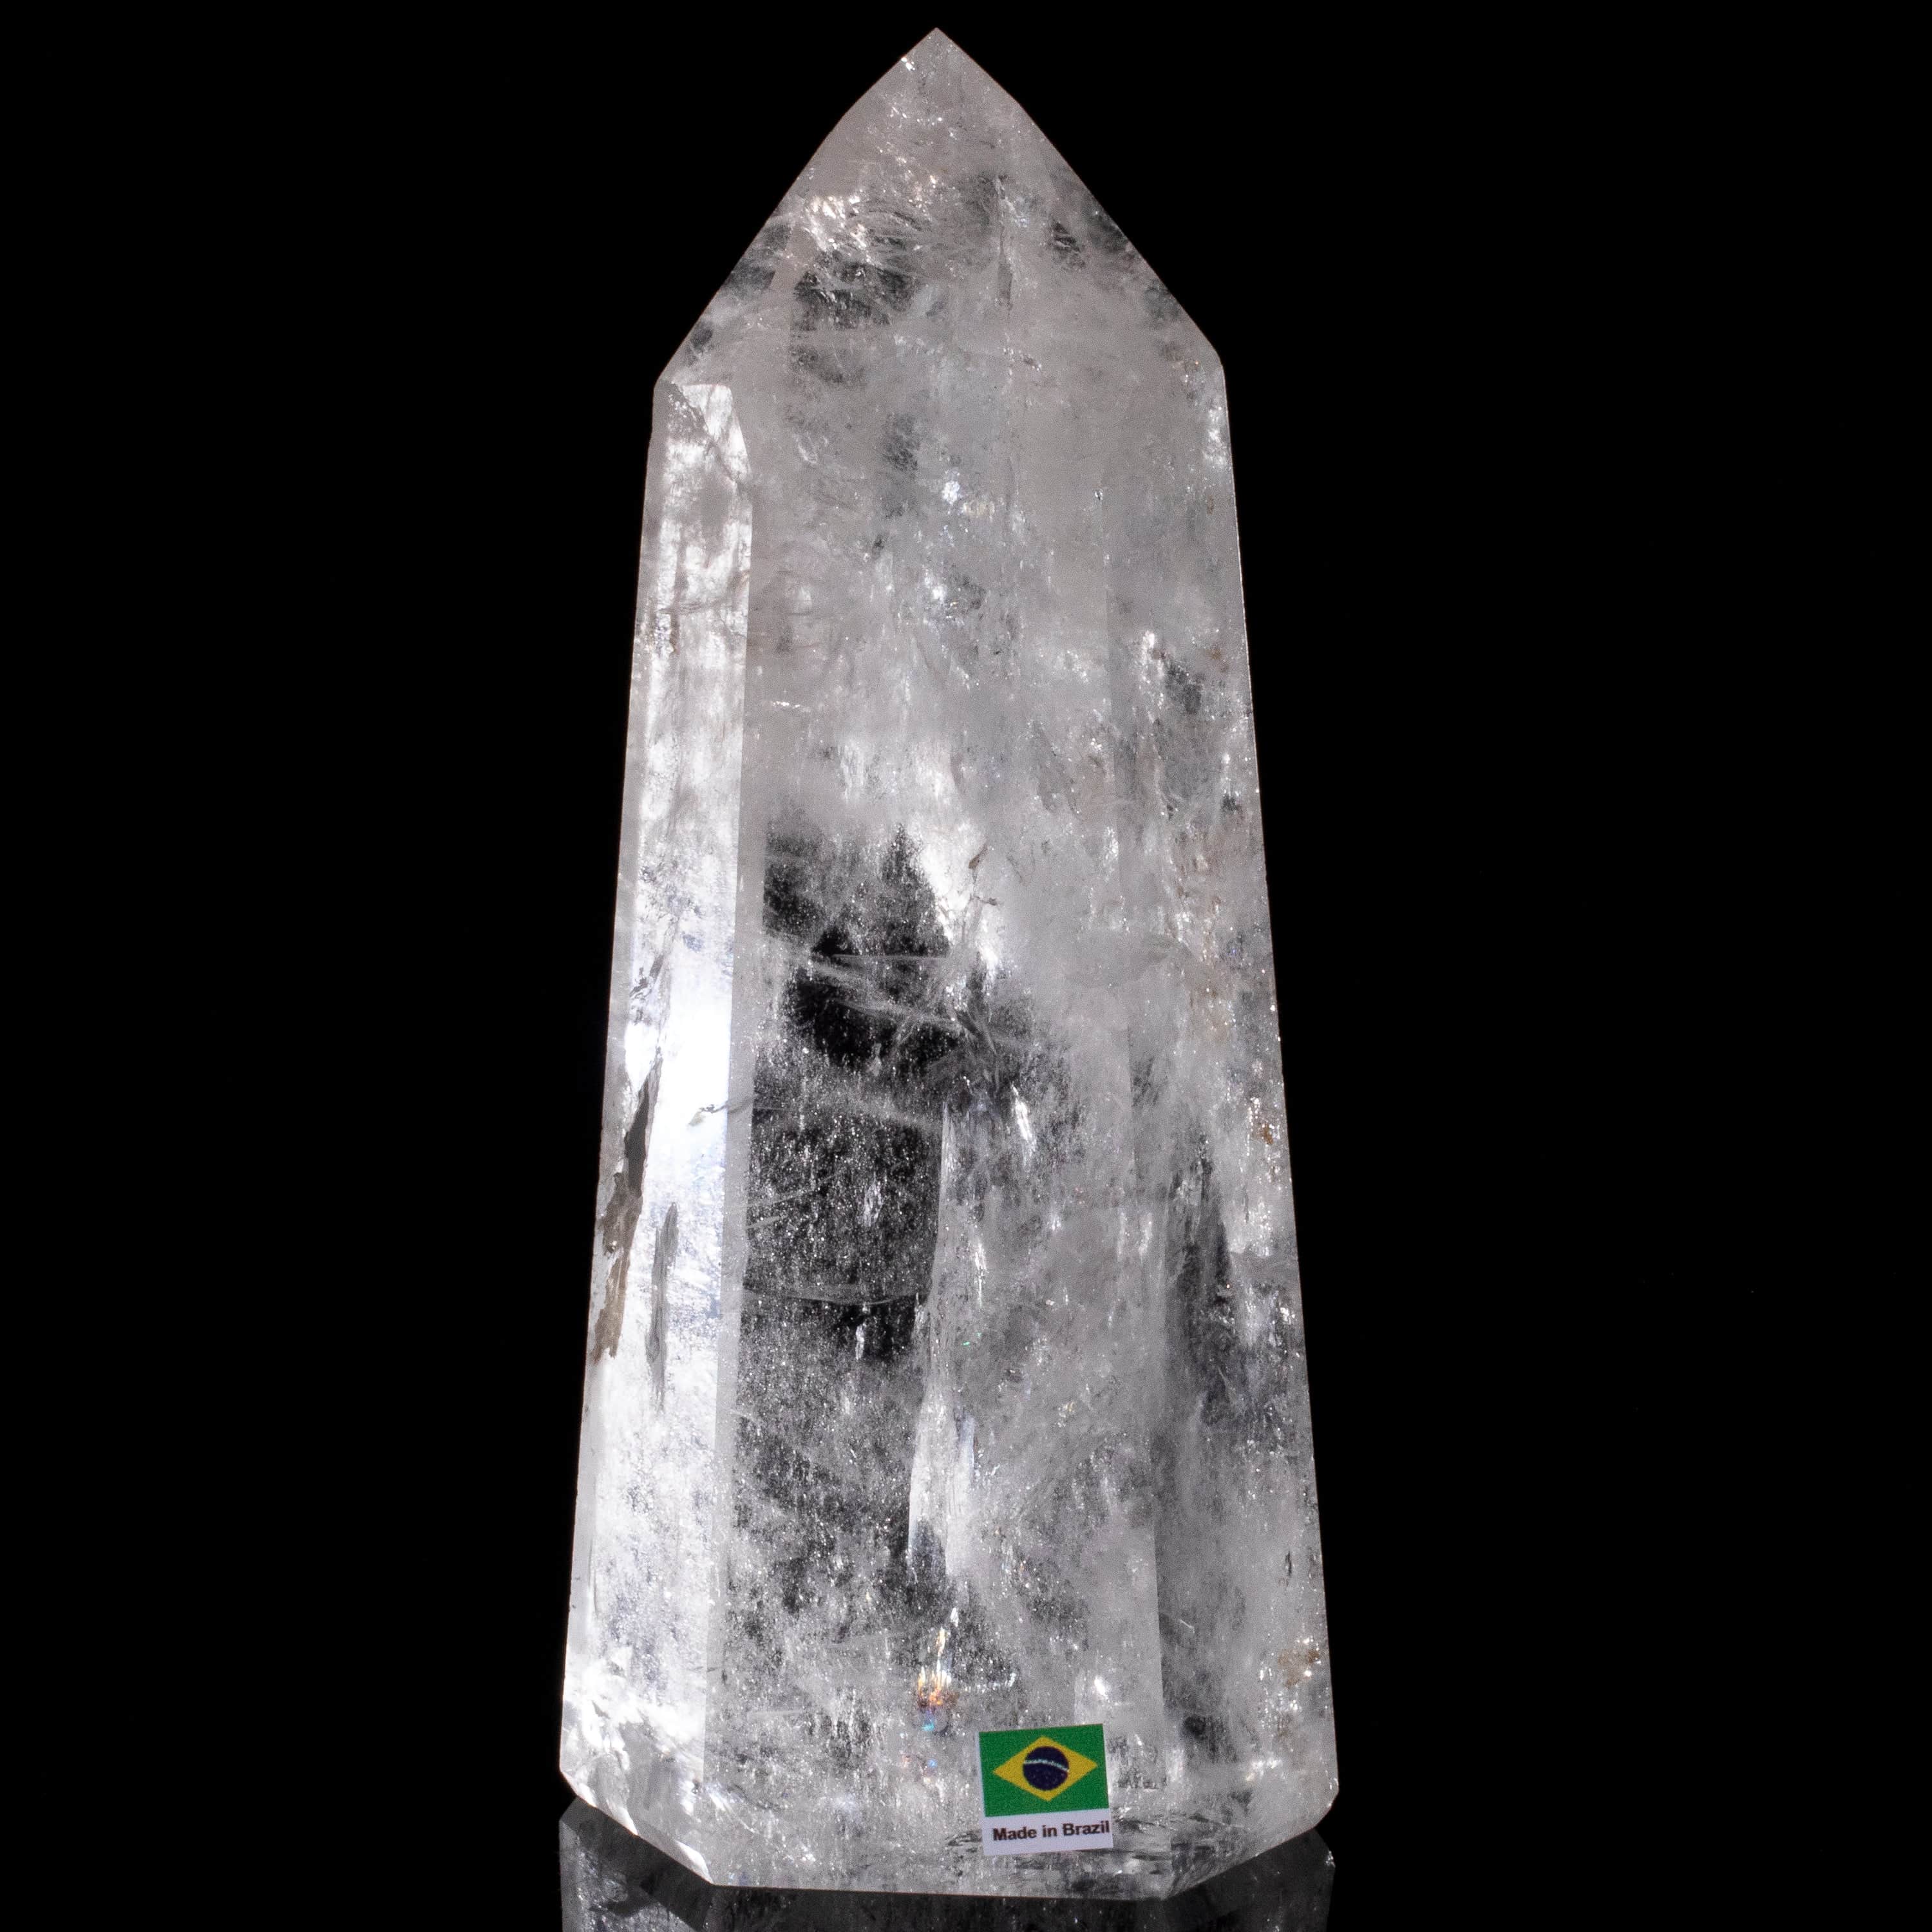 Kalifano Quartz Natural Quartz Obelisk from Brazil - 8.5" / 1,656 grams QZ2400.009